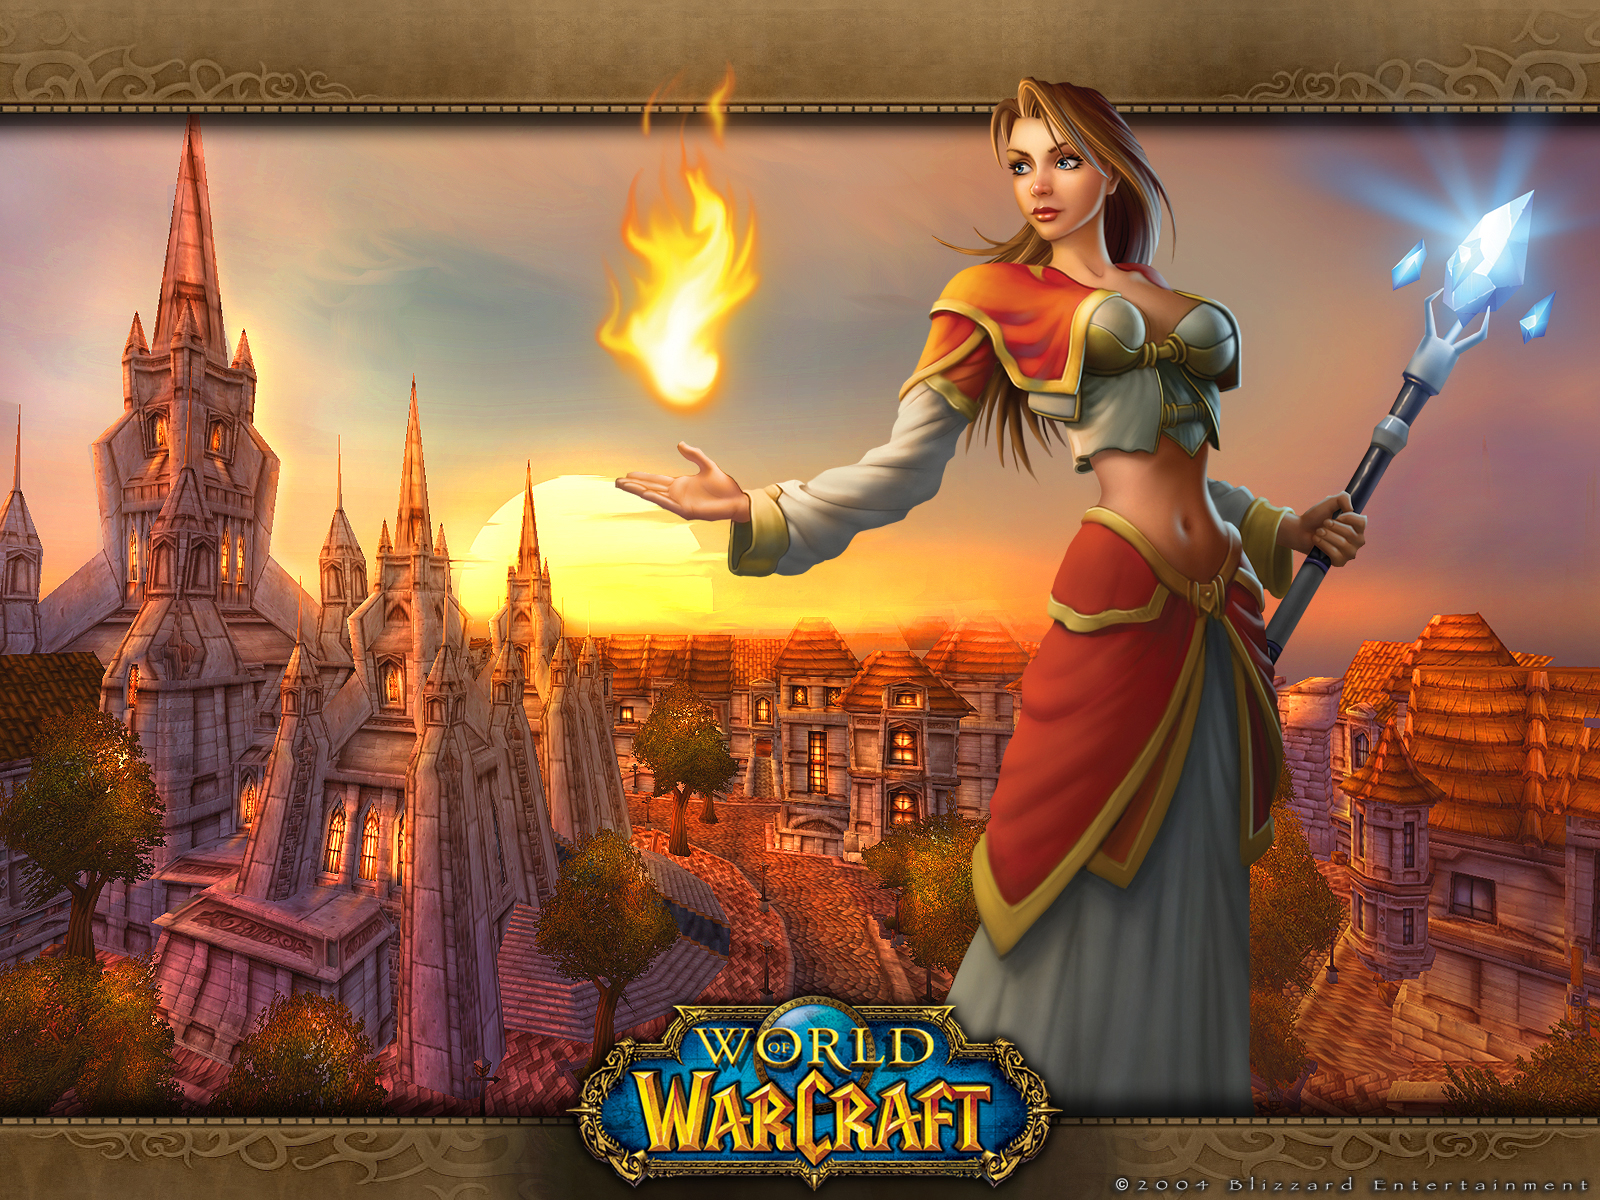 48+] World of Warcraft Human Wallpaper - WallpaperSafari